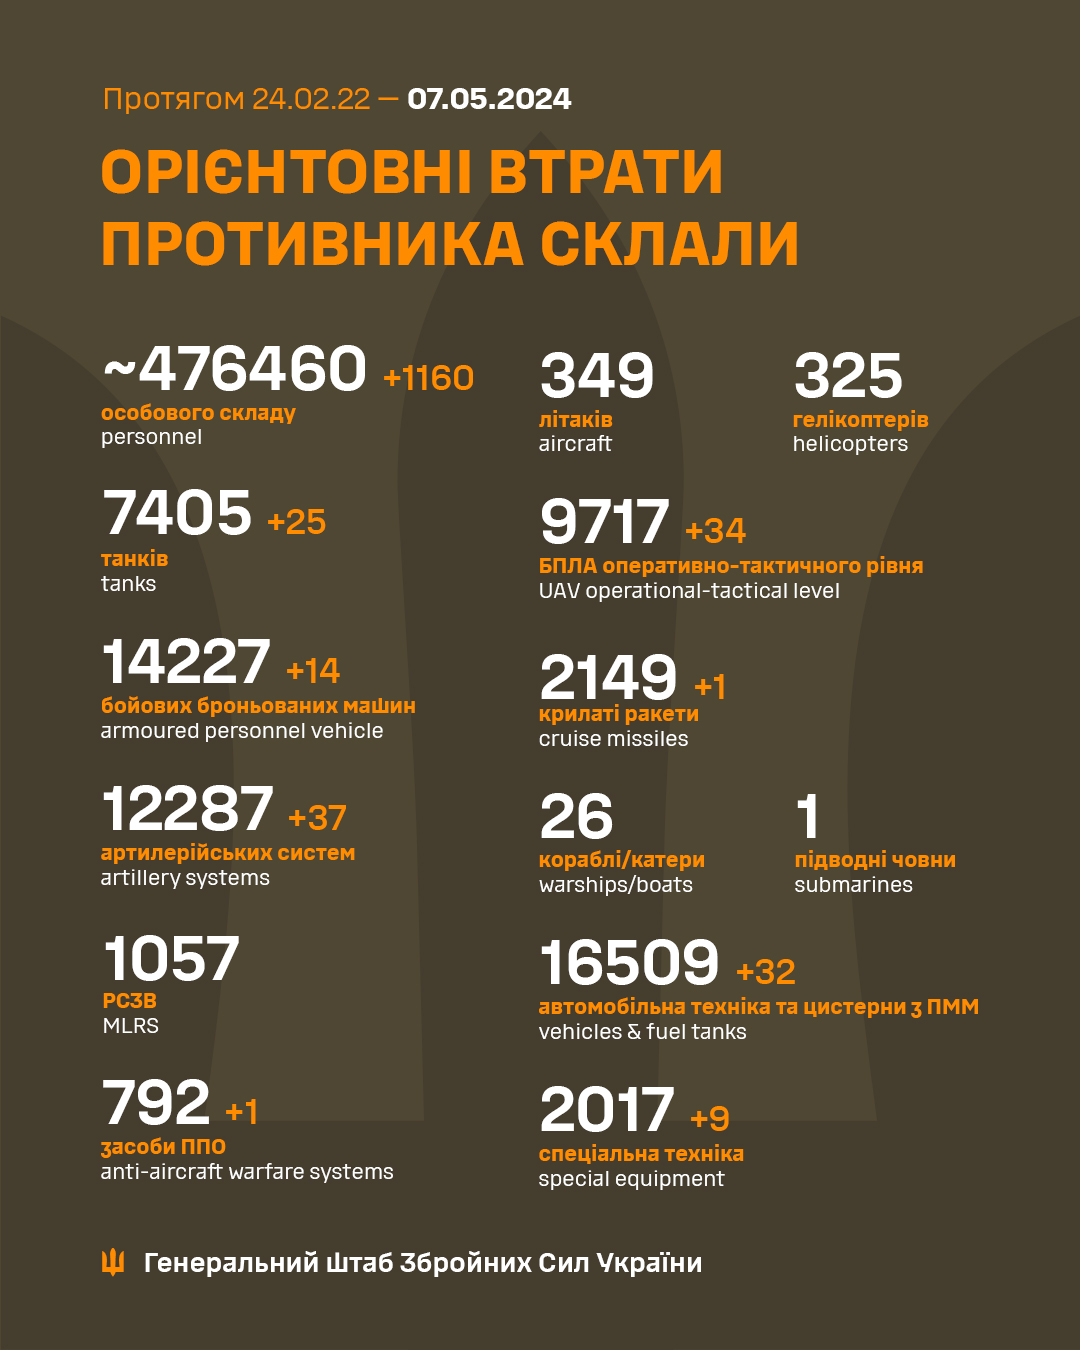 Понад тисячу загарбників і 37 артсистем: Генштаб ЗСУ оновив втрати росармії в Україні